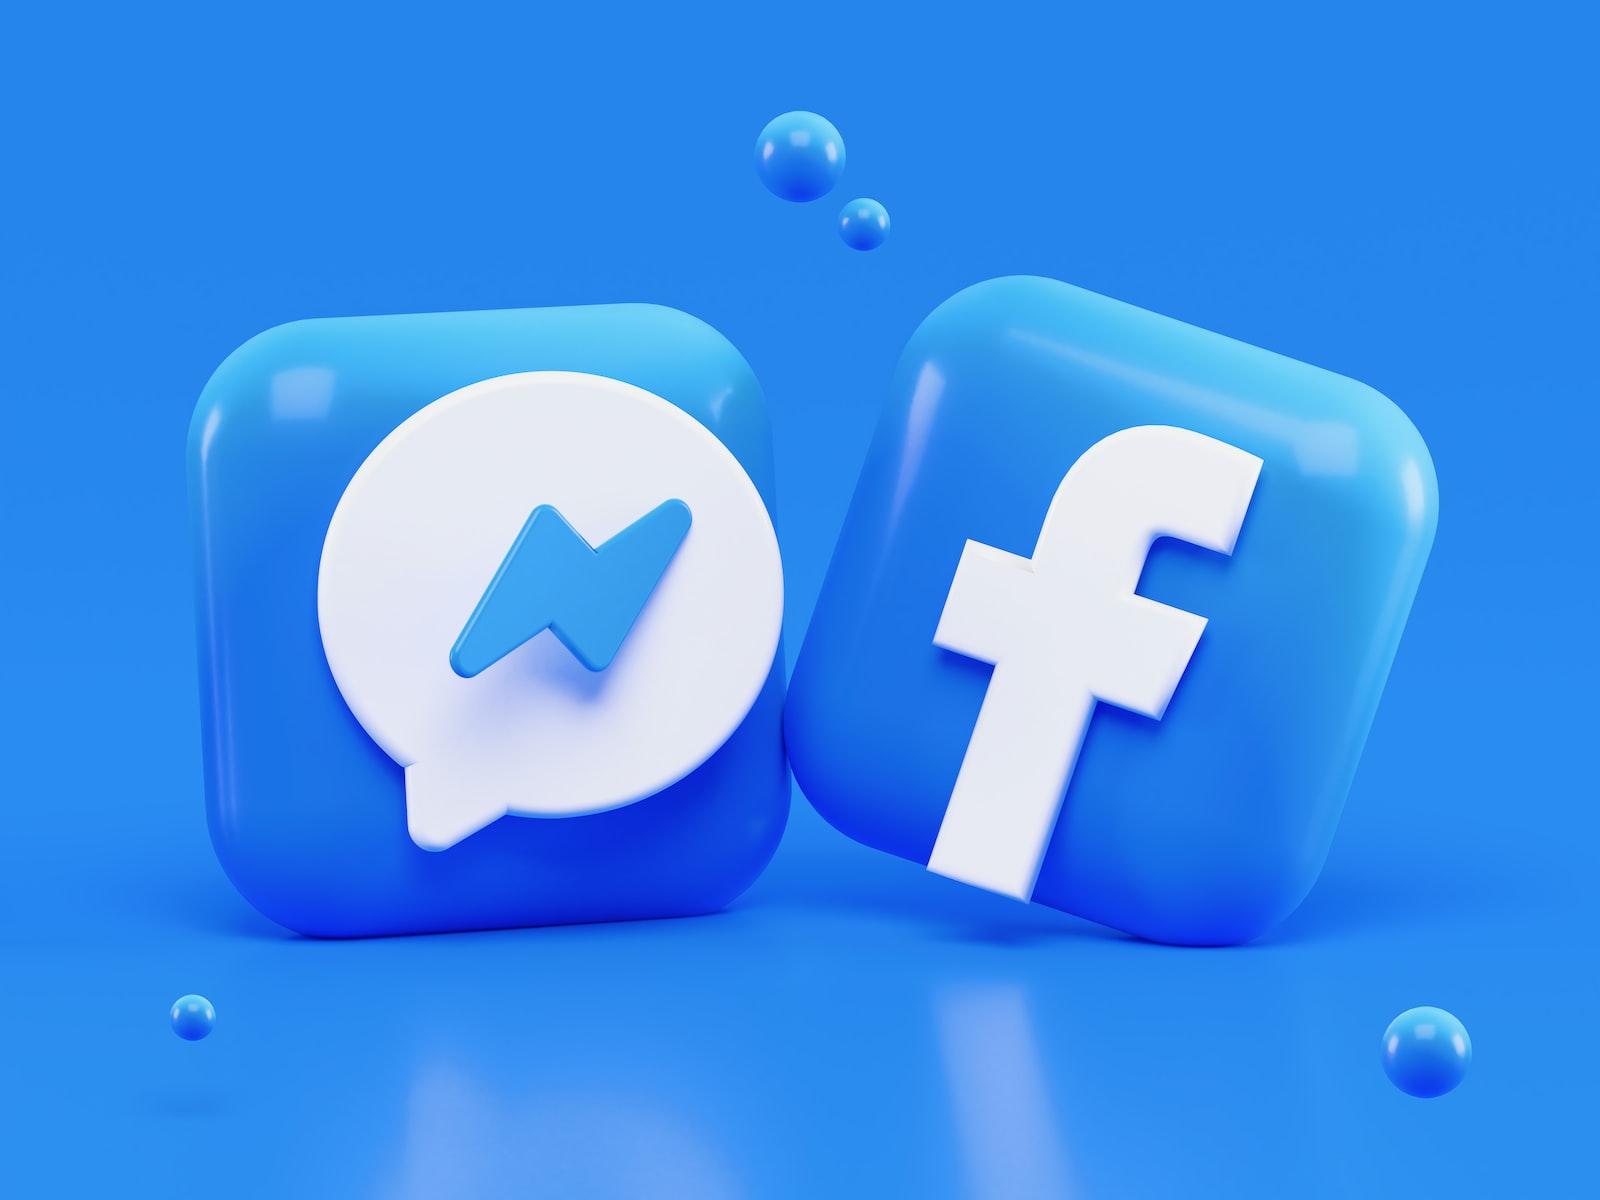 Icônes Messenger et Facebook en 3D